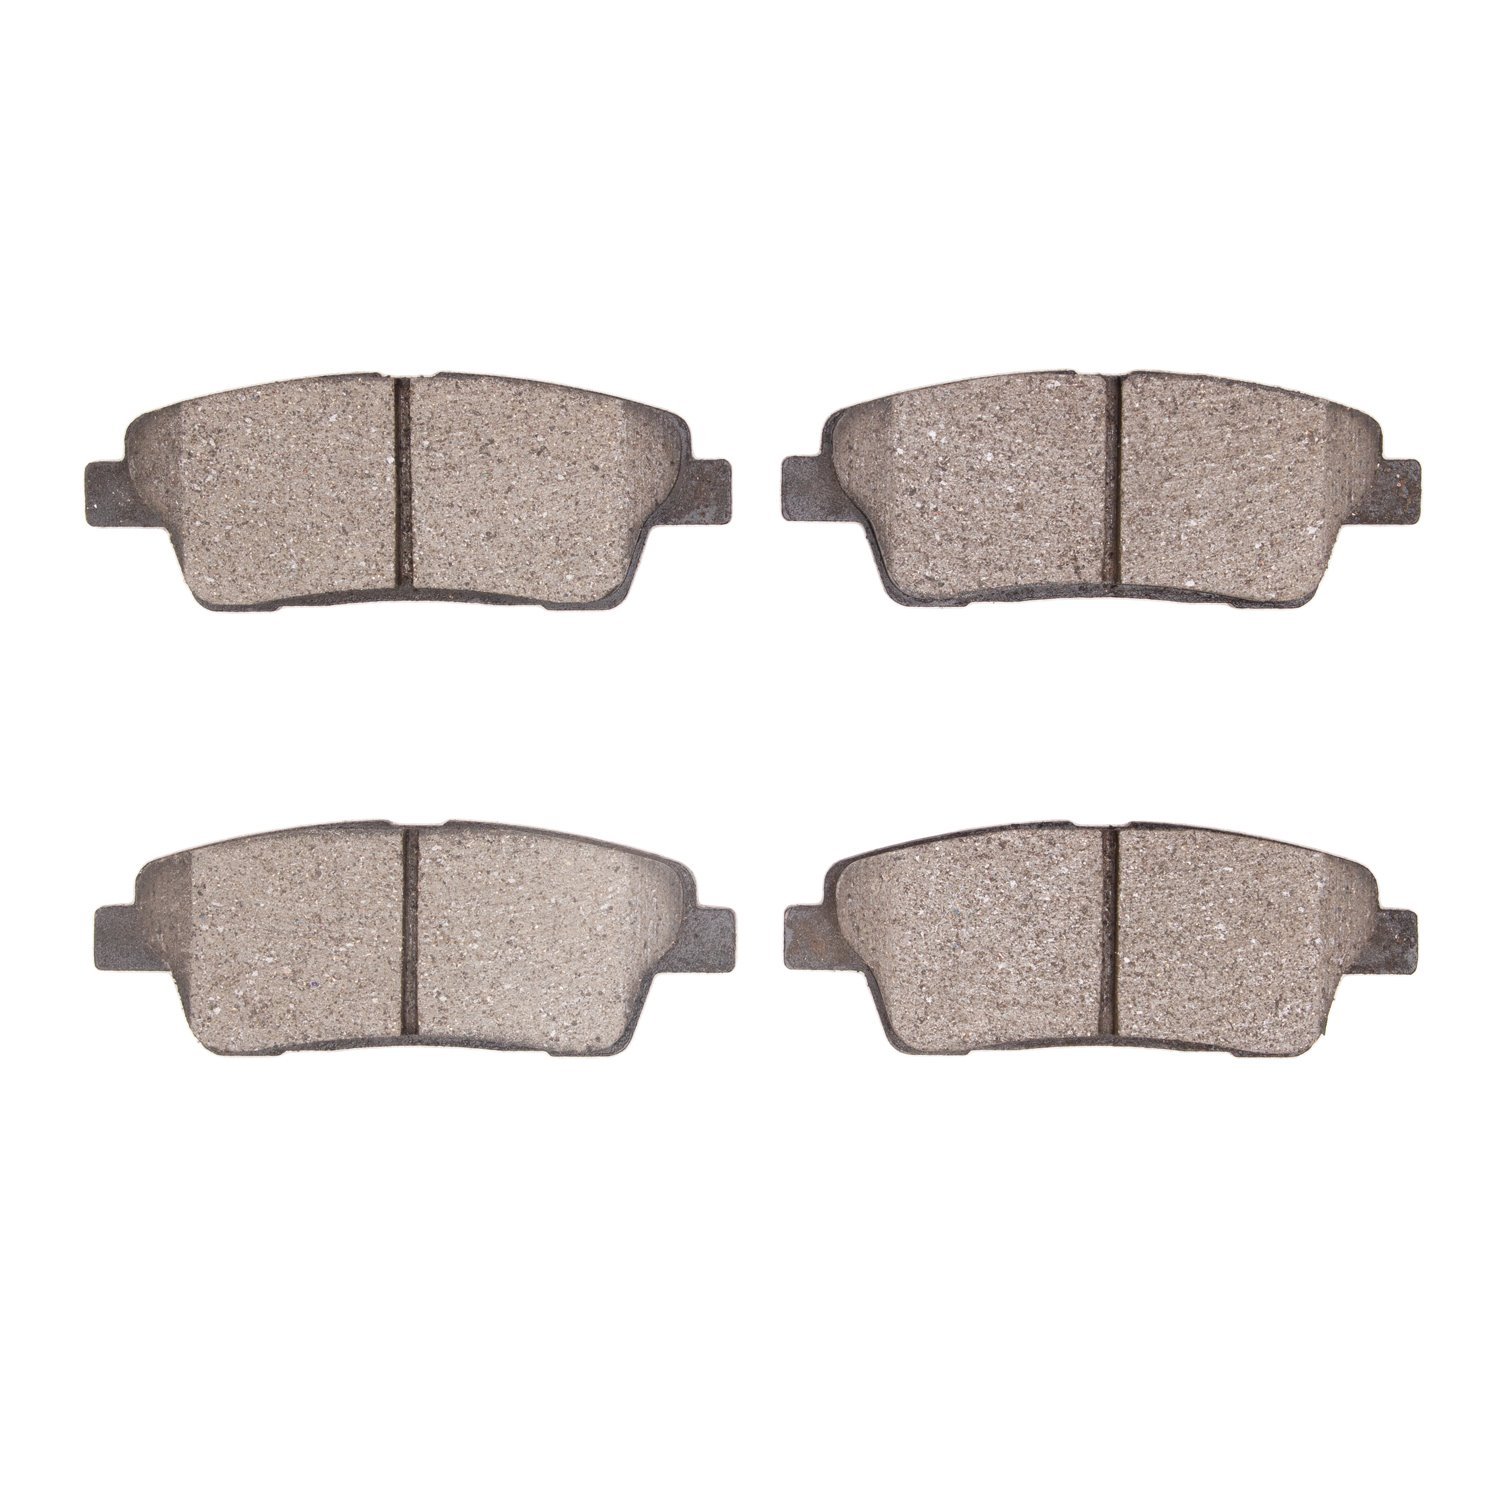 1310-2100-00 3000-Series Ceramic Brake Pads, 2018-2020 Kia/Hyundai/Genesis, Position: Rear